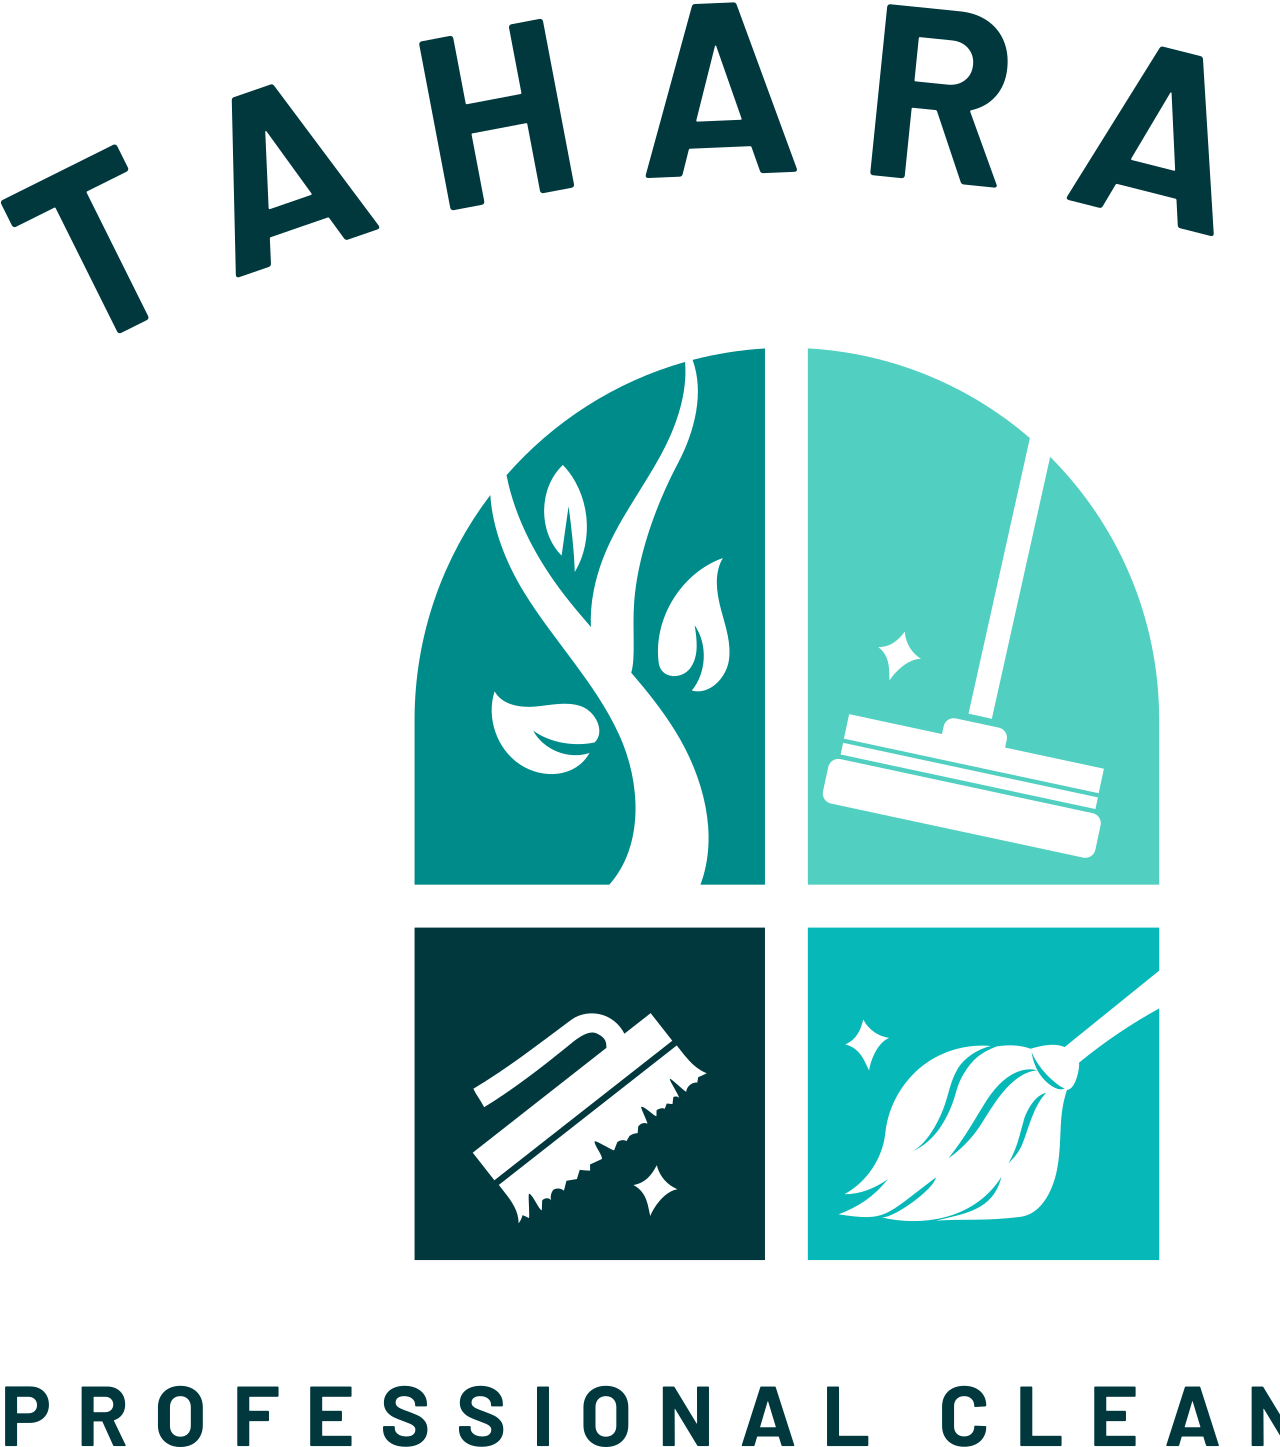 Taharah 's logo